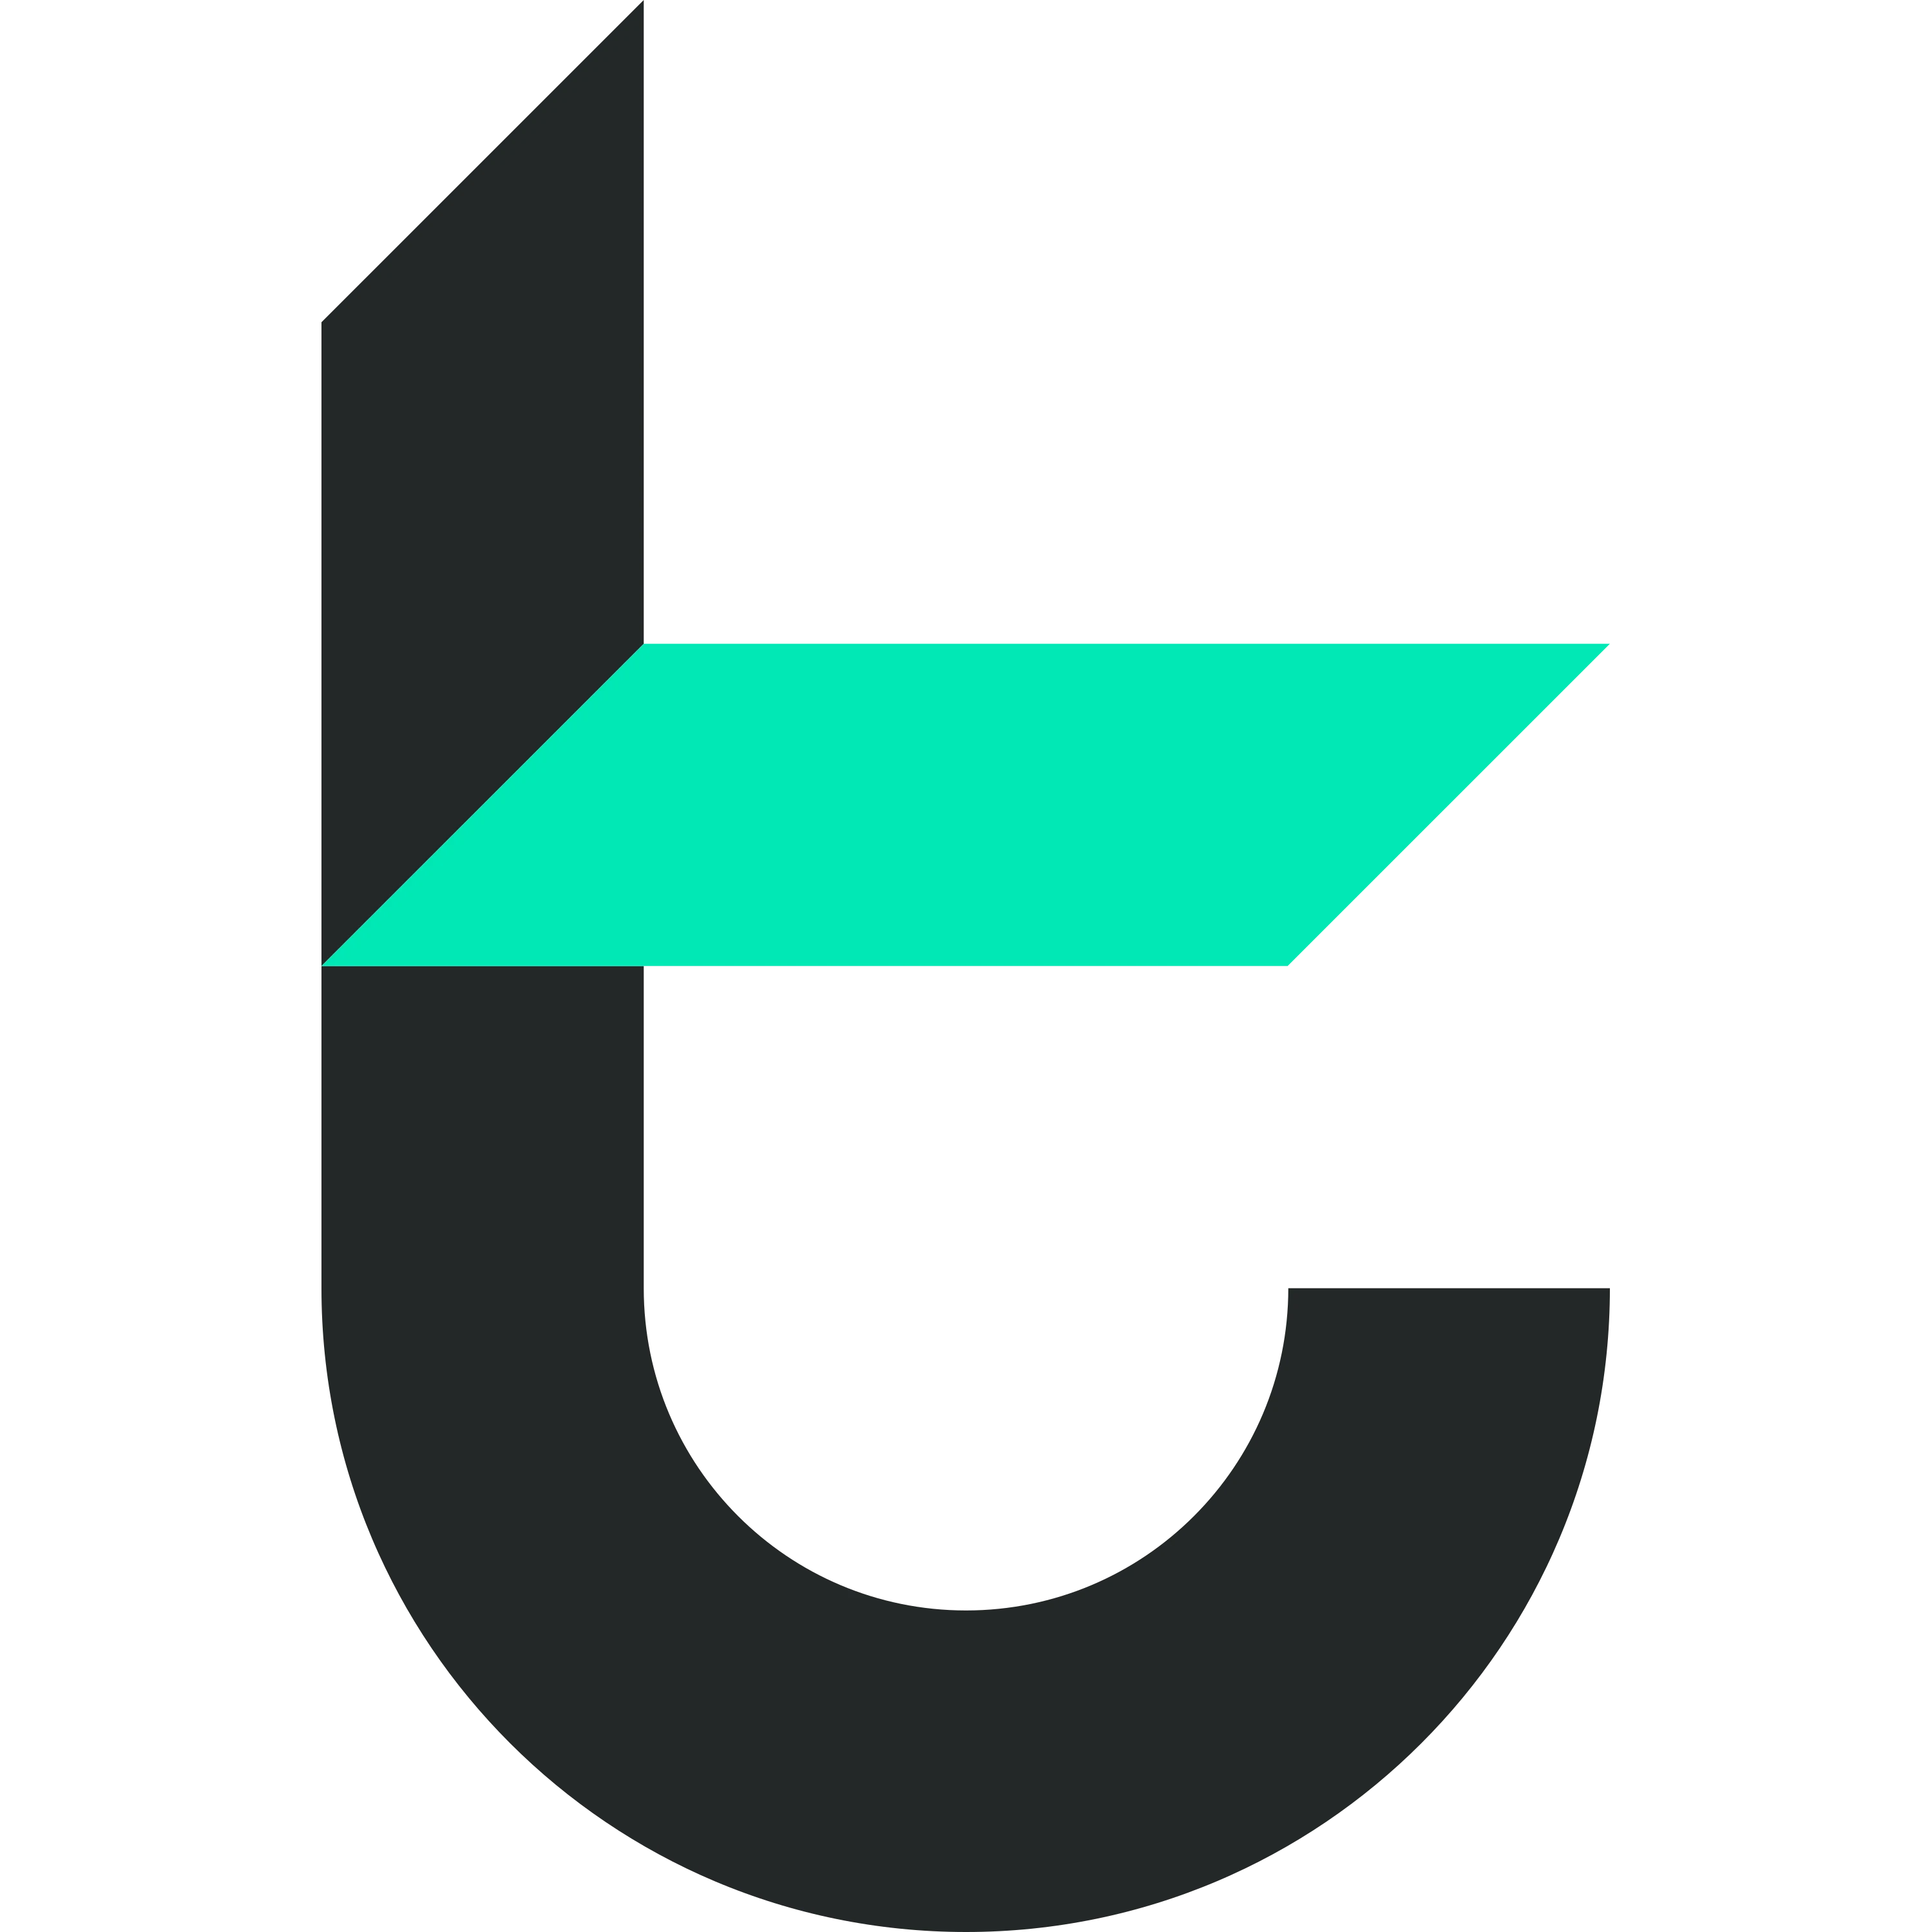 TomoChain logo in png format